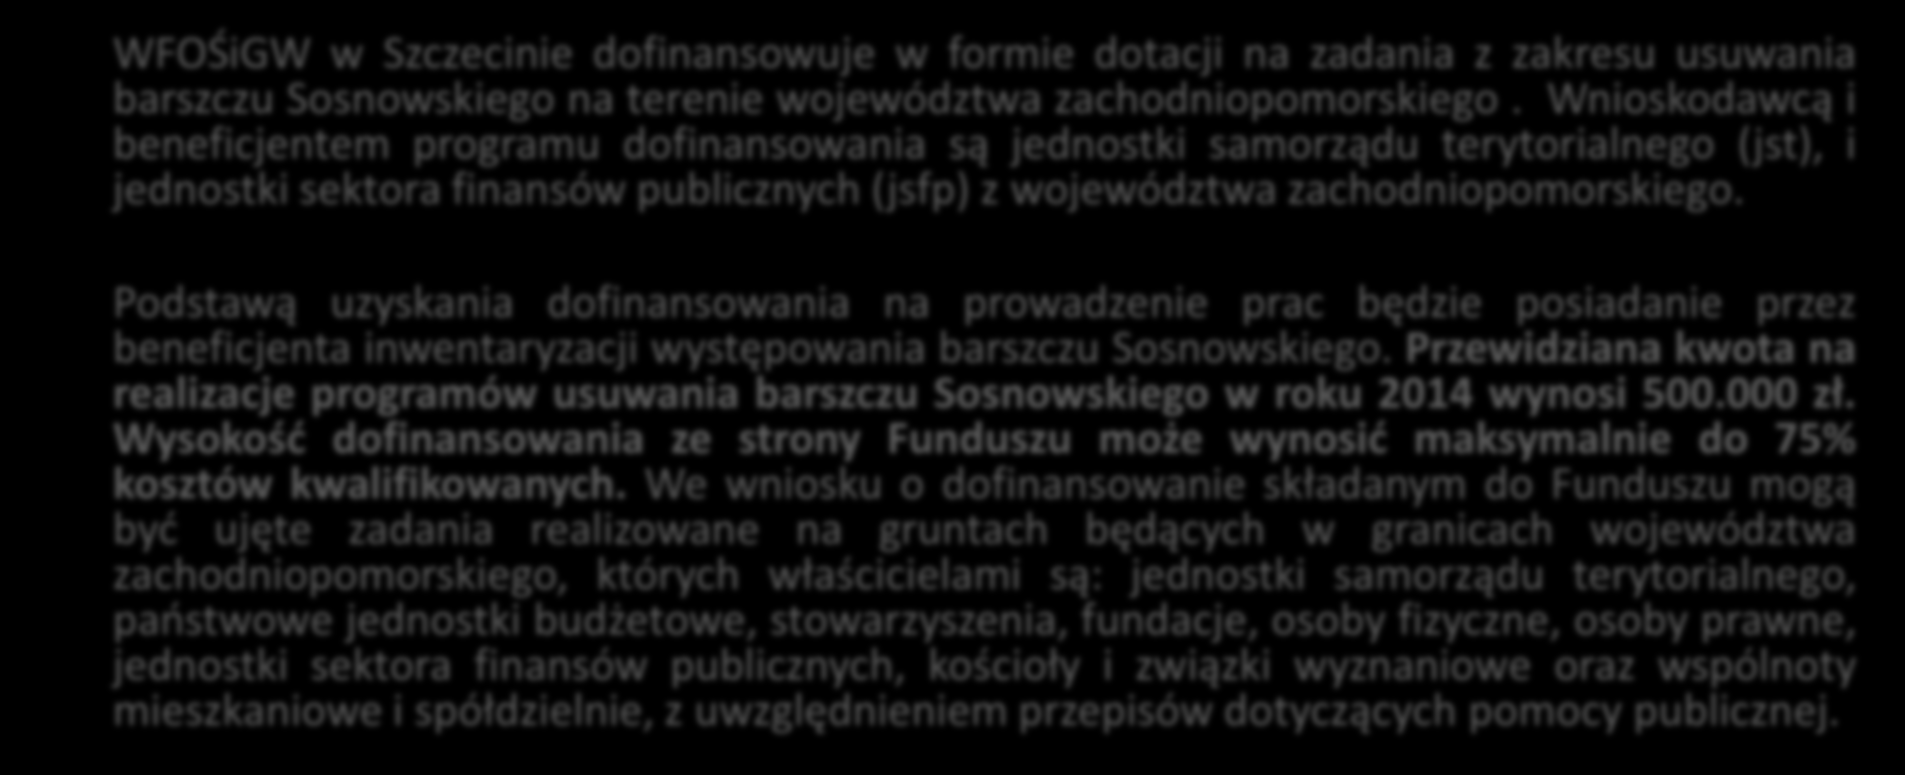 Usuwanie barszczu Sosnowskiego WFOŚiGW w Szczecinie dofinansowuje w formie dotacji na zadania z zakresu usuwania barszczu Sosnowskiego na terenie województwa zachodniopomorskiego.